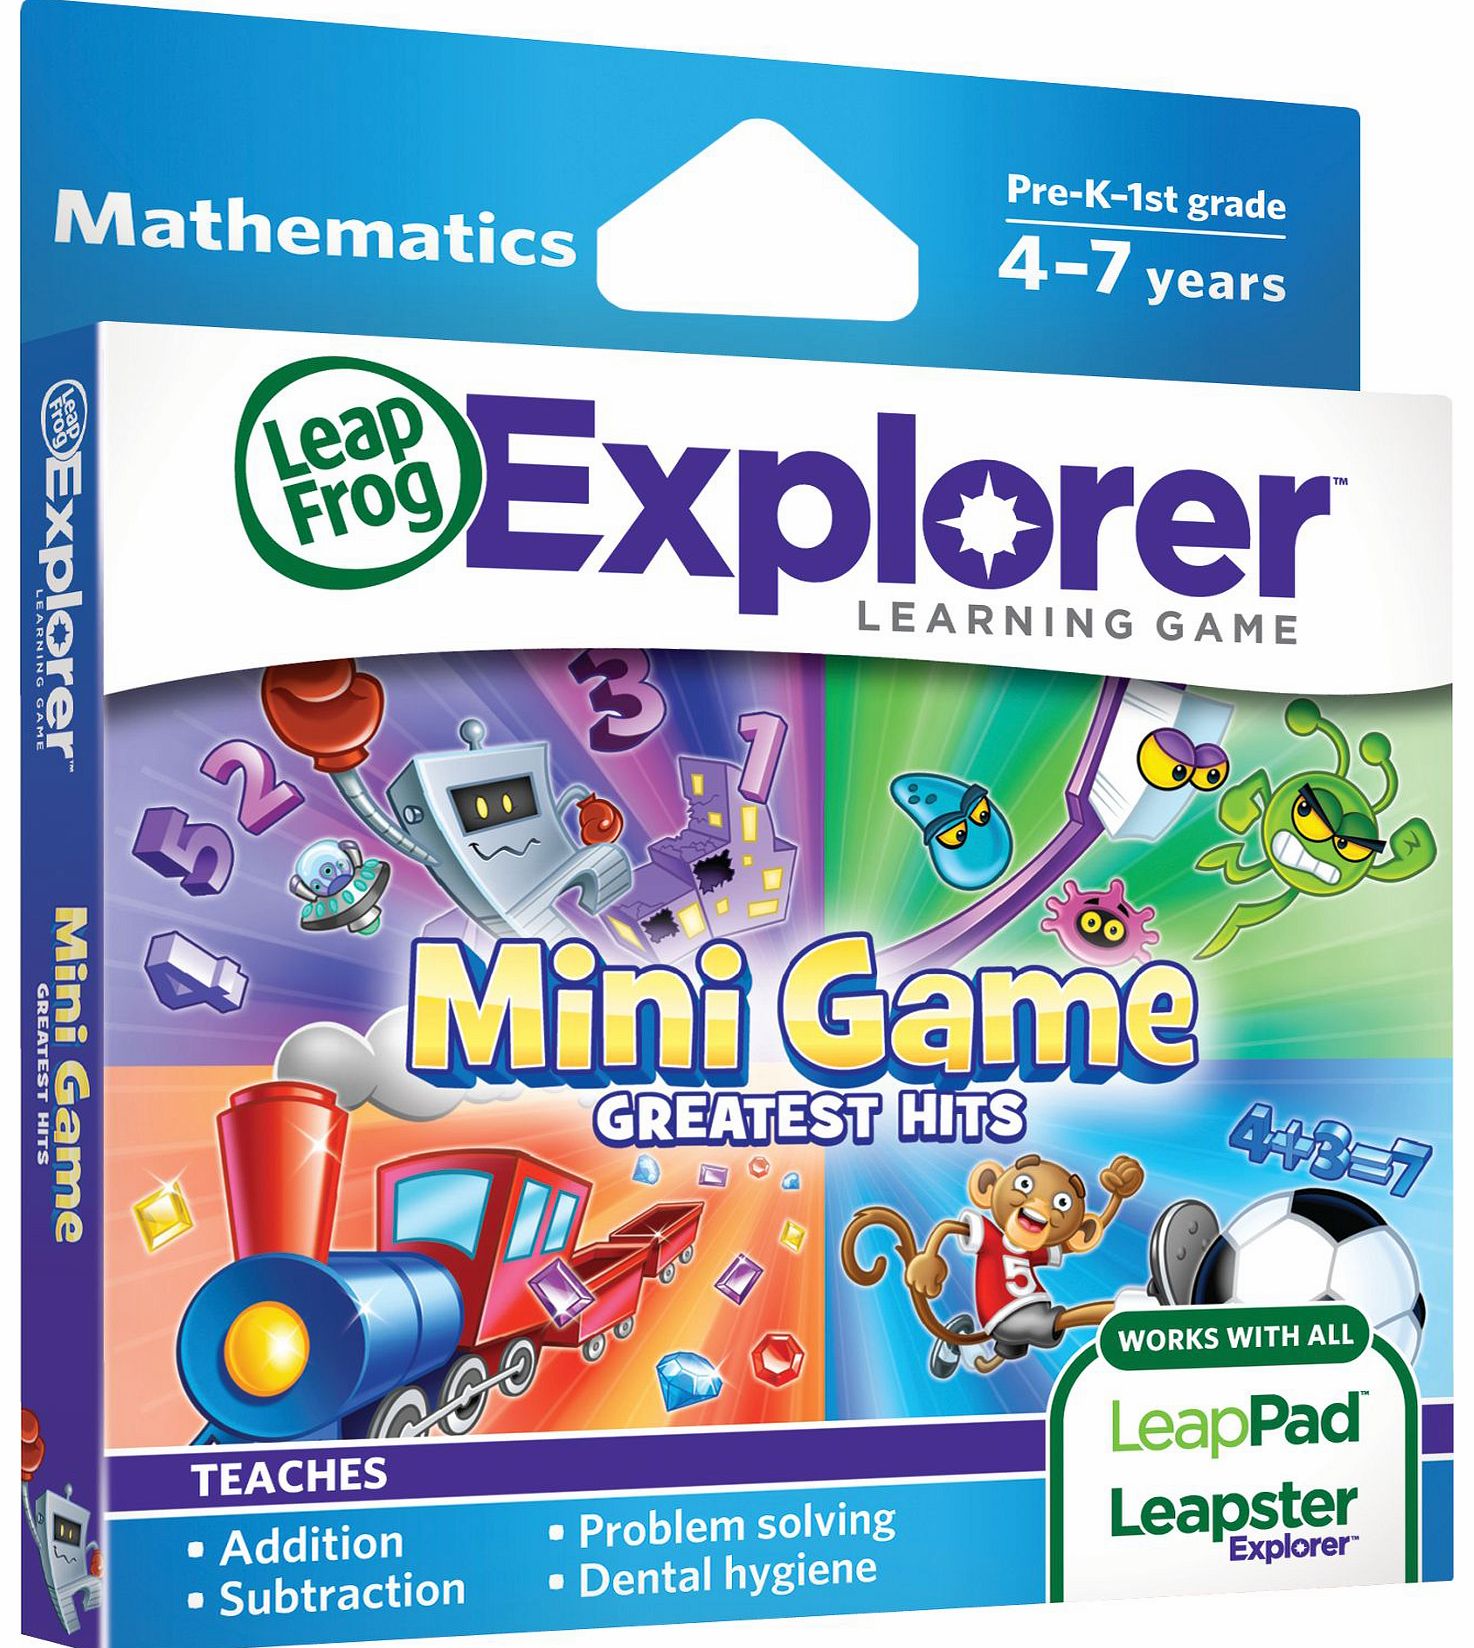 LeapFrog Explorer Learning Game - Mini Game Greatest Hits